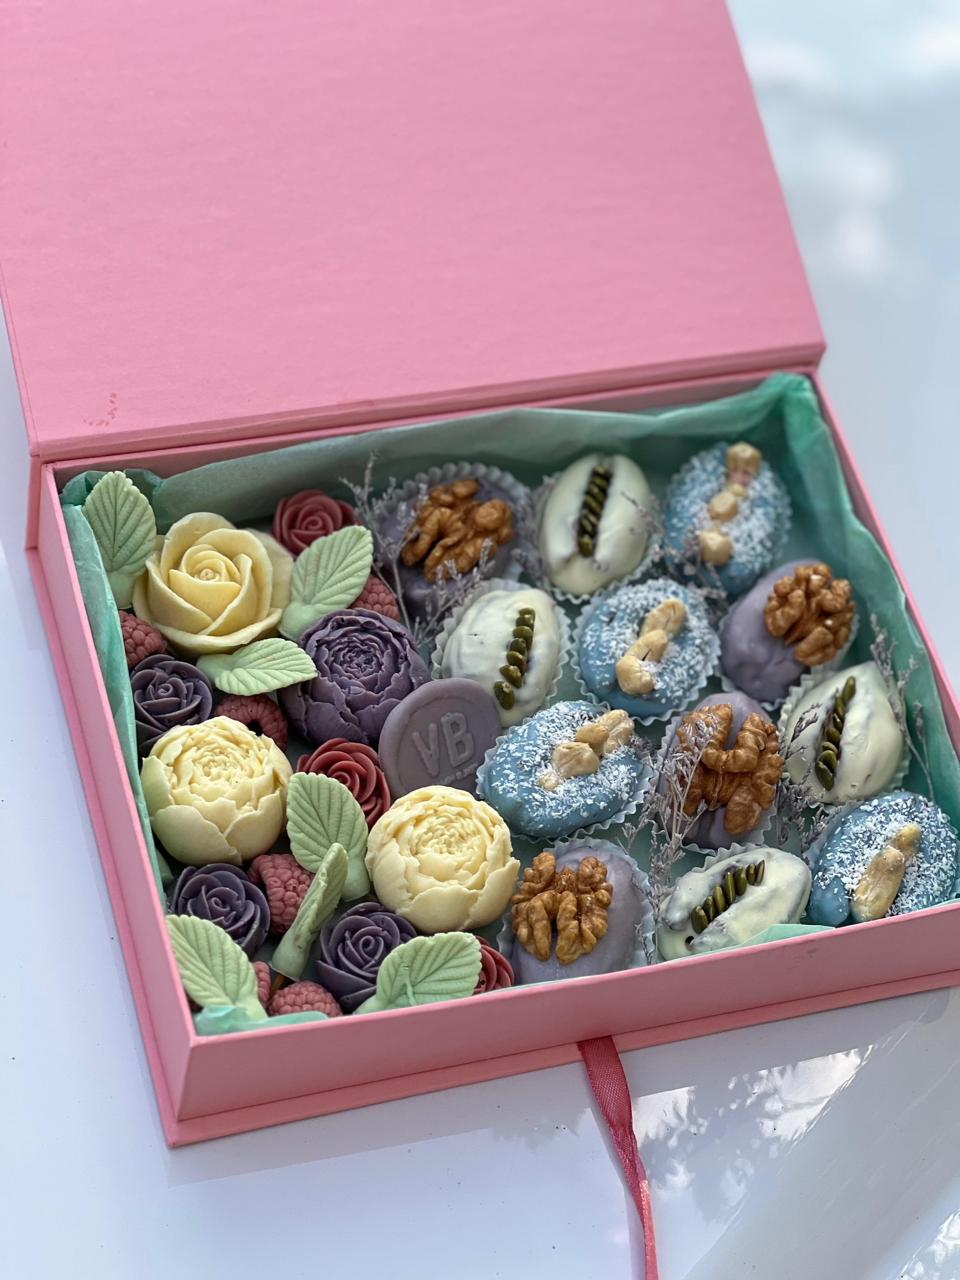 Набор из фиников и цветов из бельгийского шоколада с доставкой по Алматы